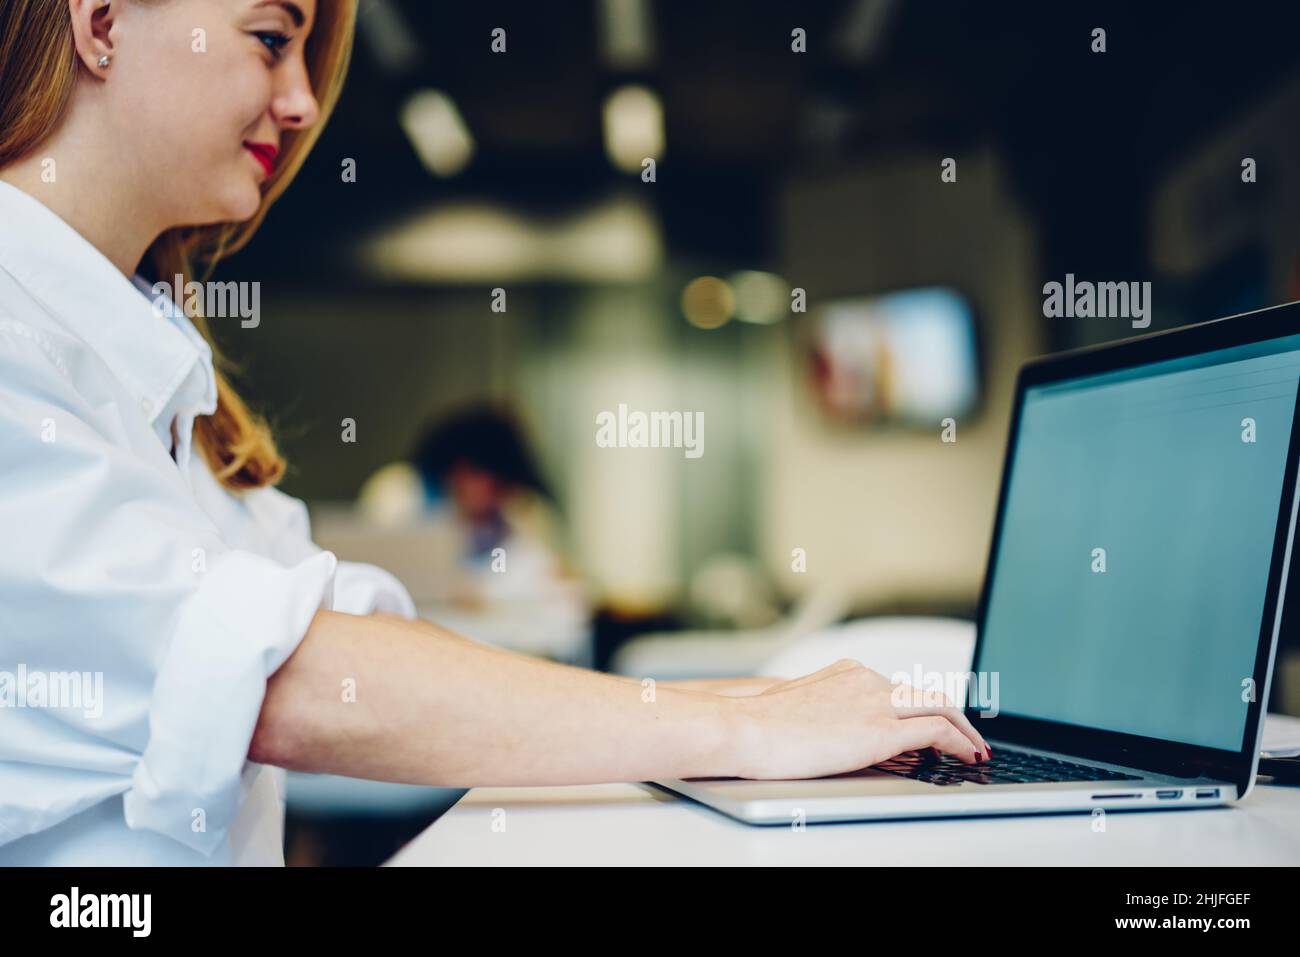 Jeune femme qui tape sur un ordinateur portable tout en travaillant Banque D'Images